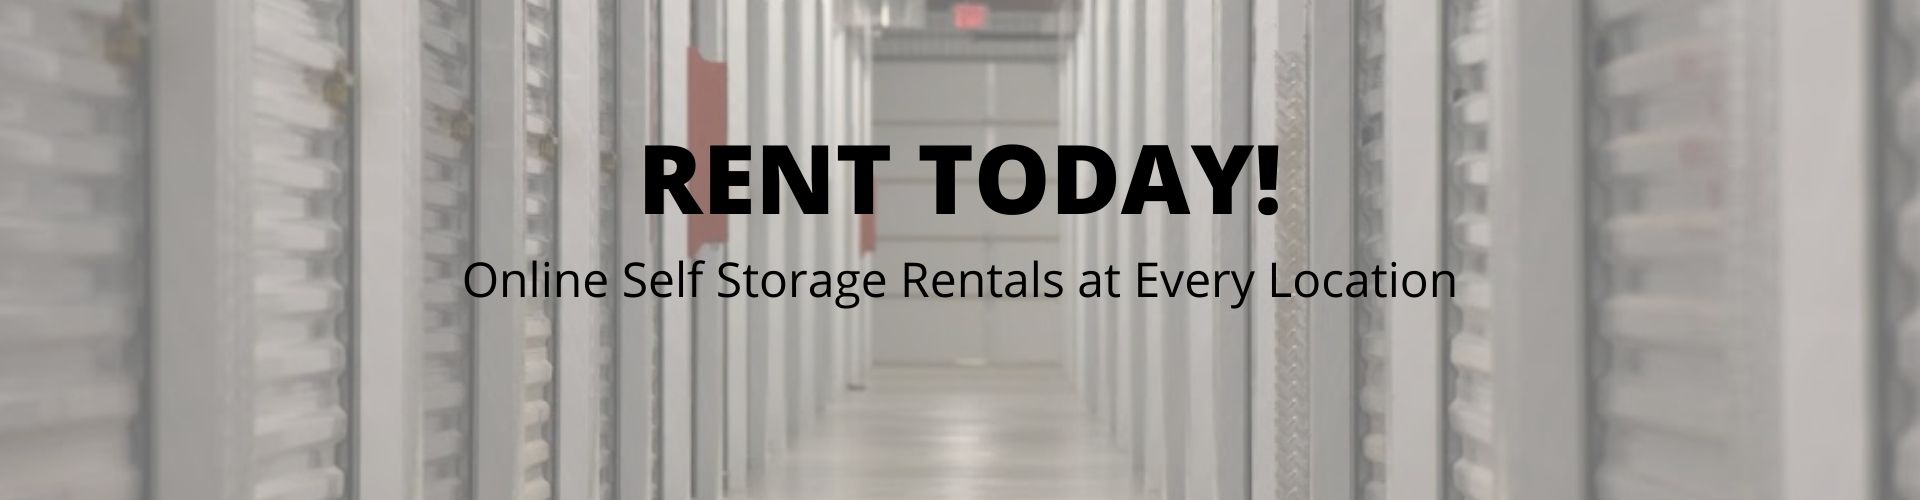 online storage rentals at Fountainbleau Self Storage